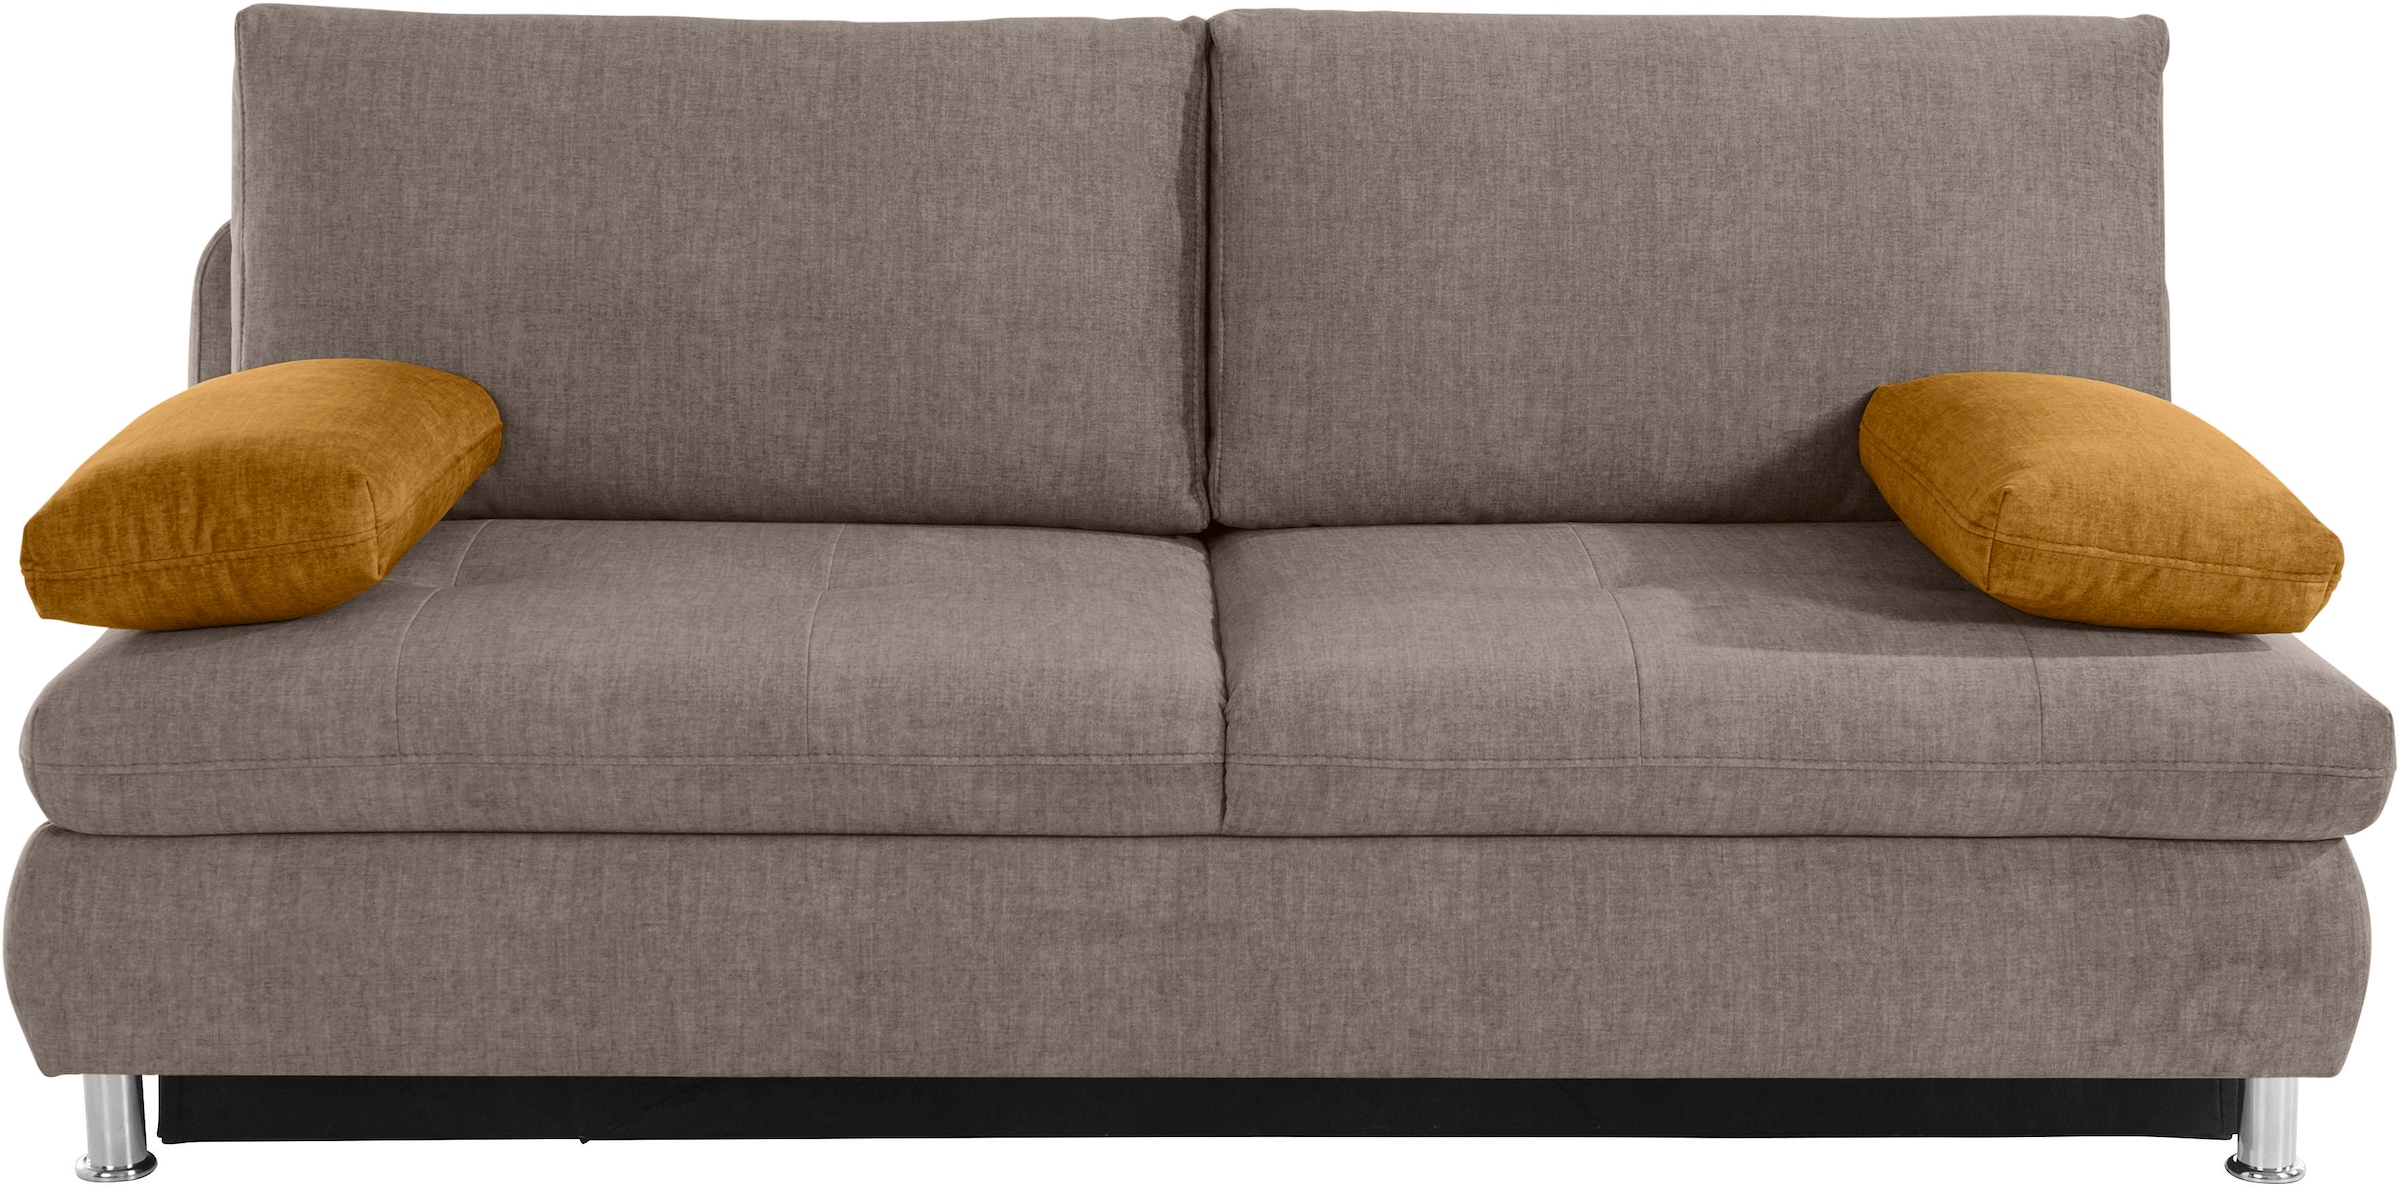 (140kg Boxspringfederung Kaltschaum Schlafsofa Belastung/Sitz) Couch mit online oder kaufen »Zermatt«, wahlweise Mr.